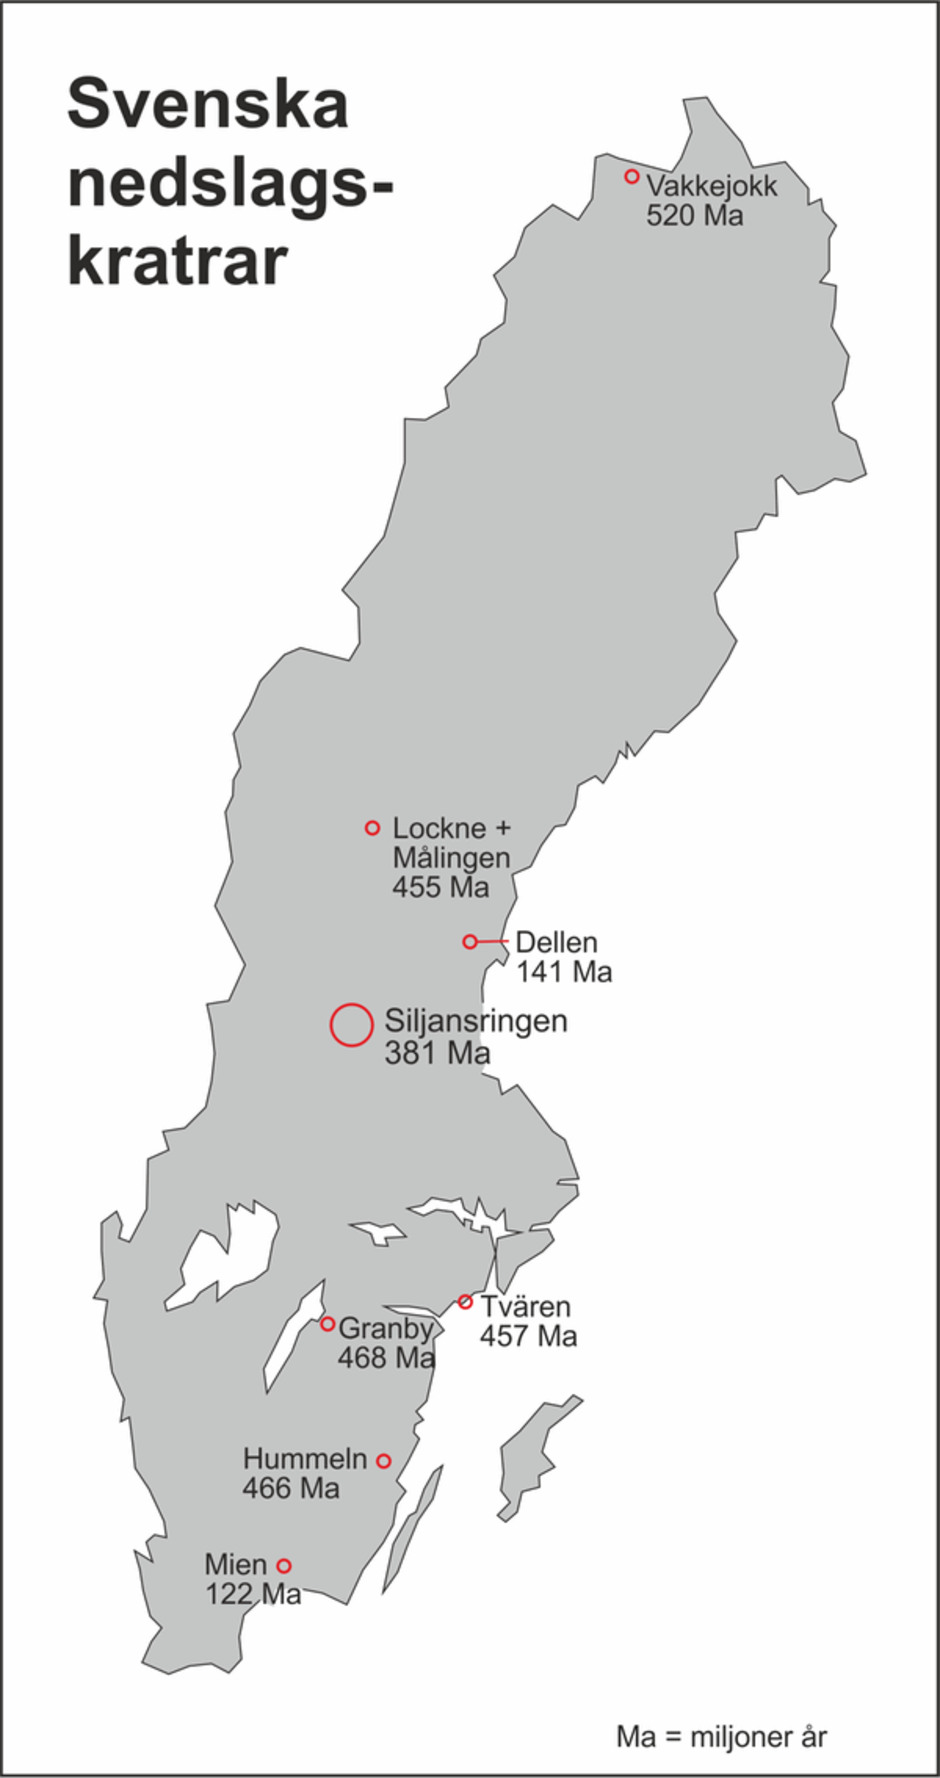 Karta över Sverige som visar alla kända och bevisade nedslagskratrar och deras ålder i miljoner år (Ma).